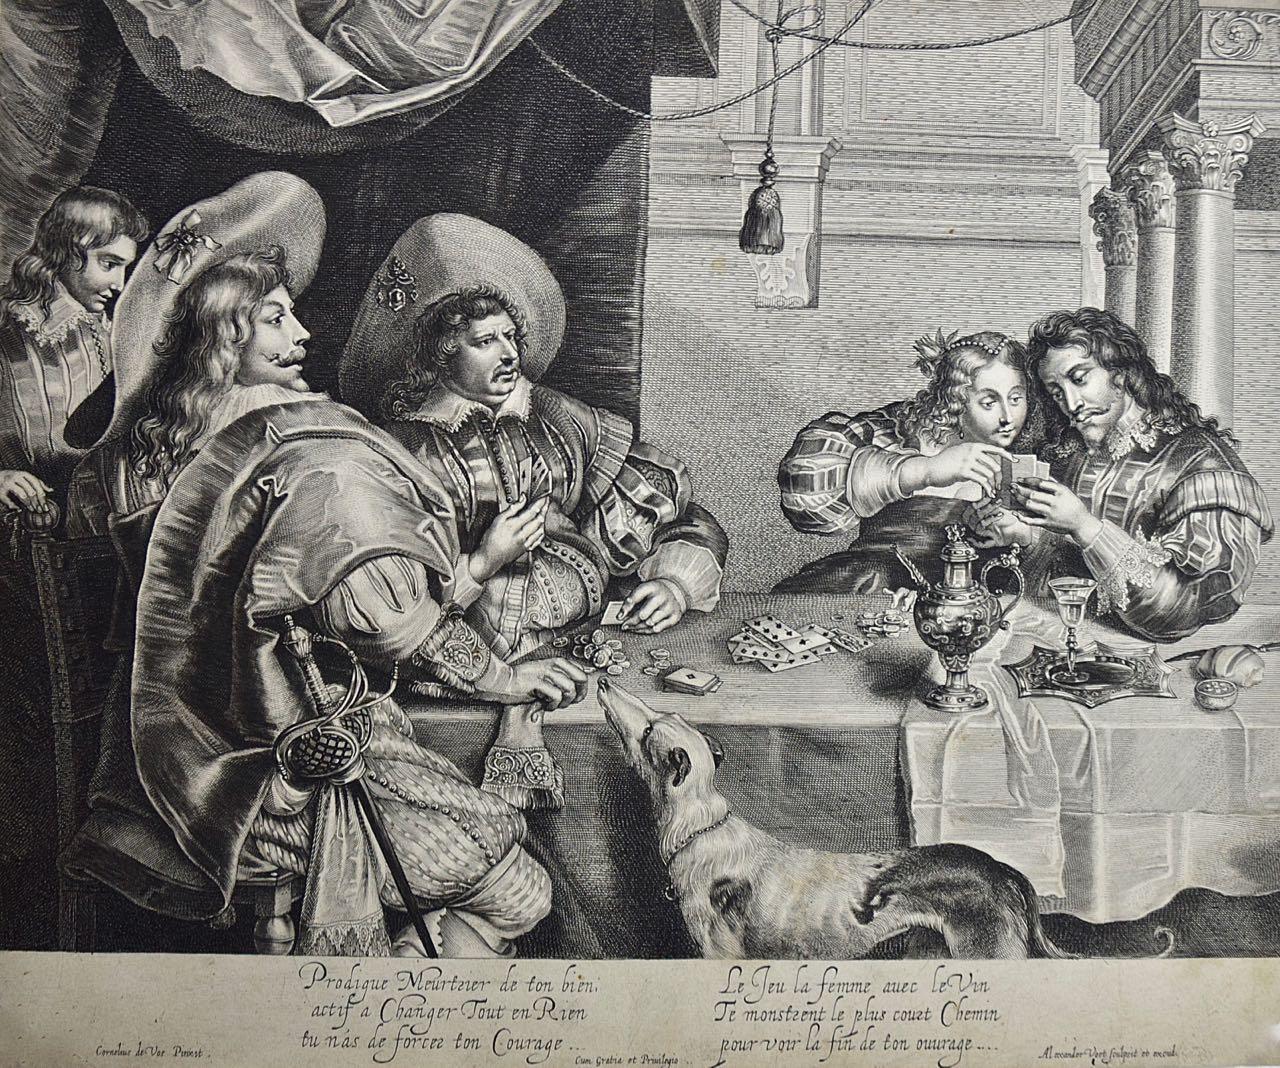  Das Kartenspiel: Ein Kupferstich von A. Voet nach Cornelis de Vos aus dem frühen 17. Jahrhundert